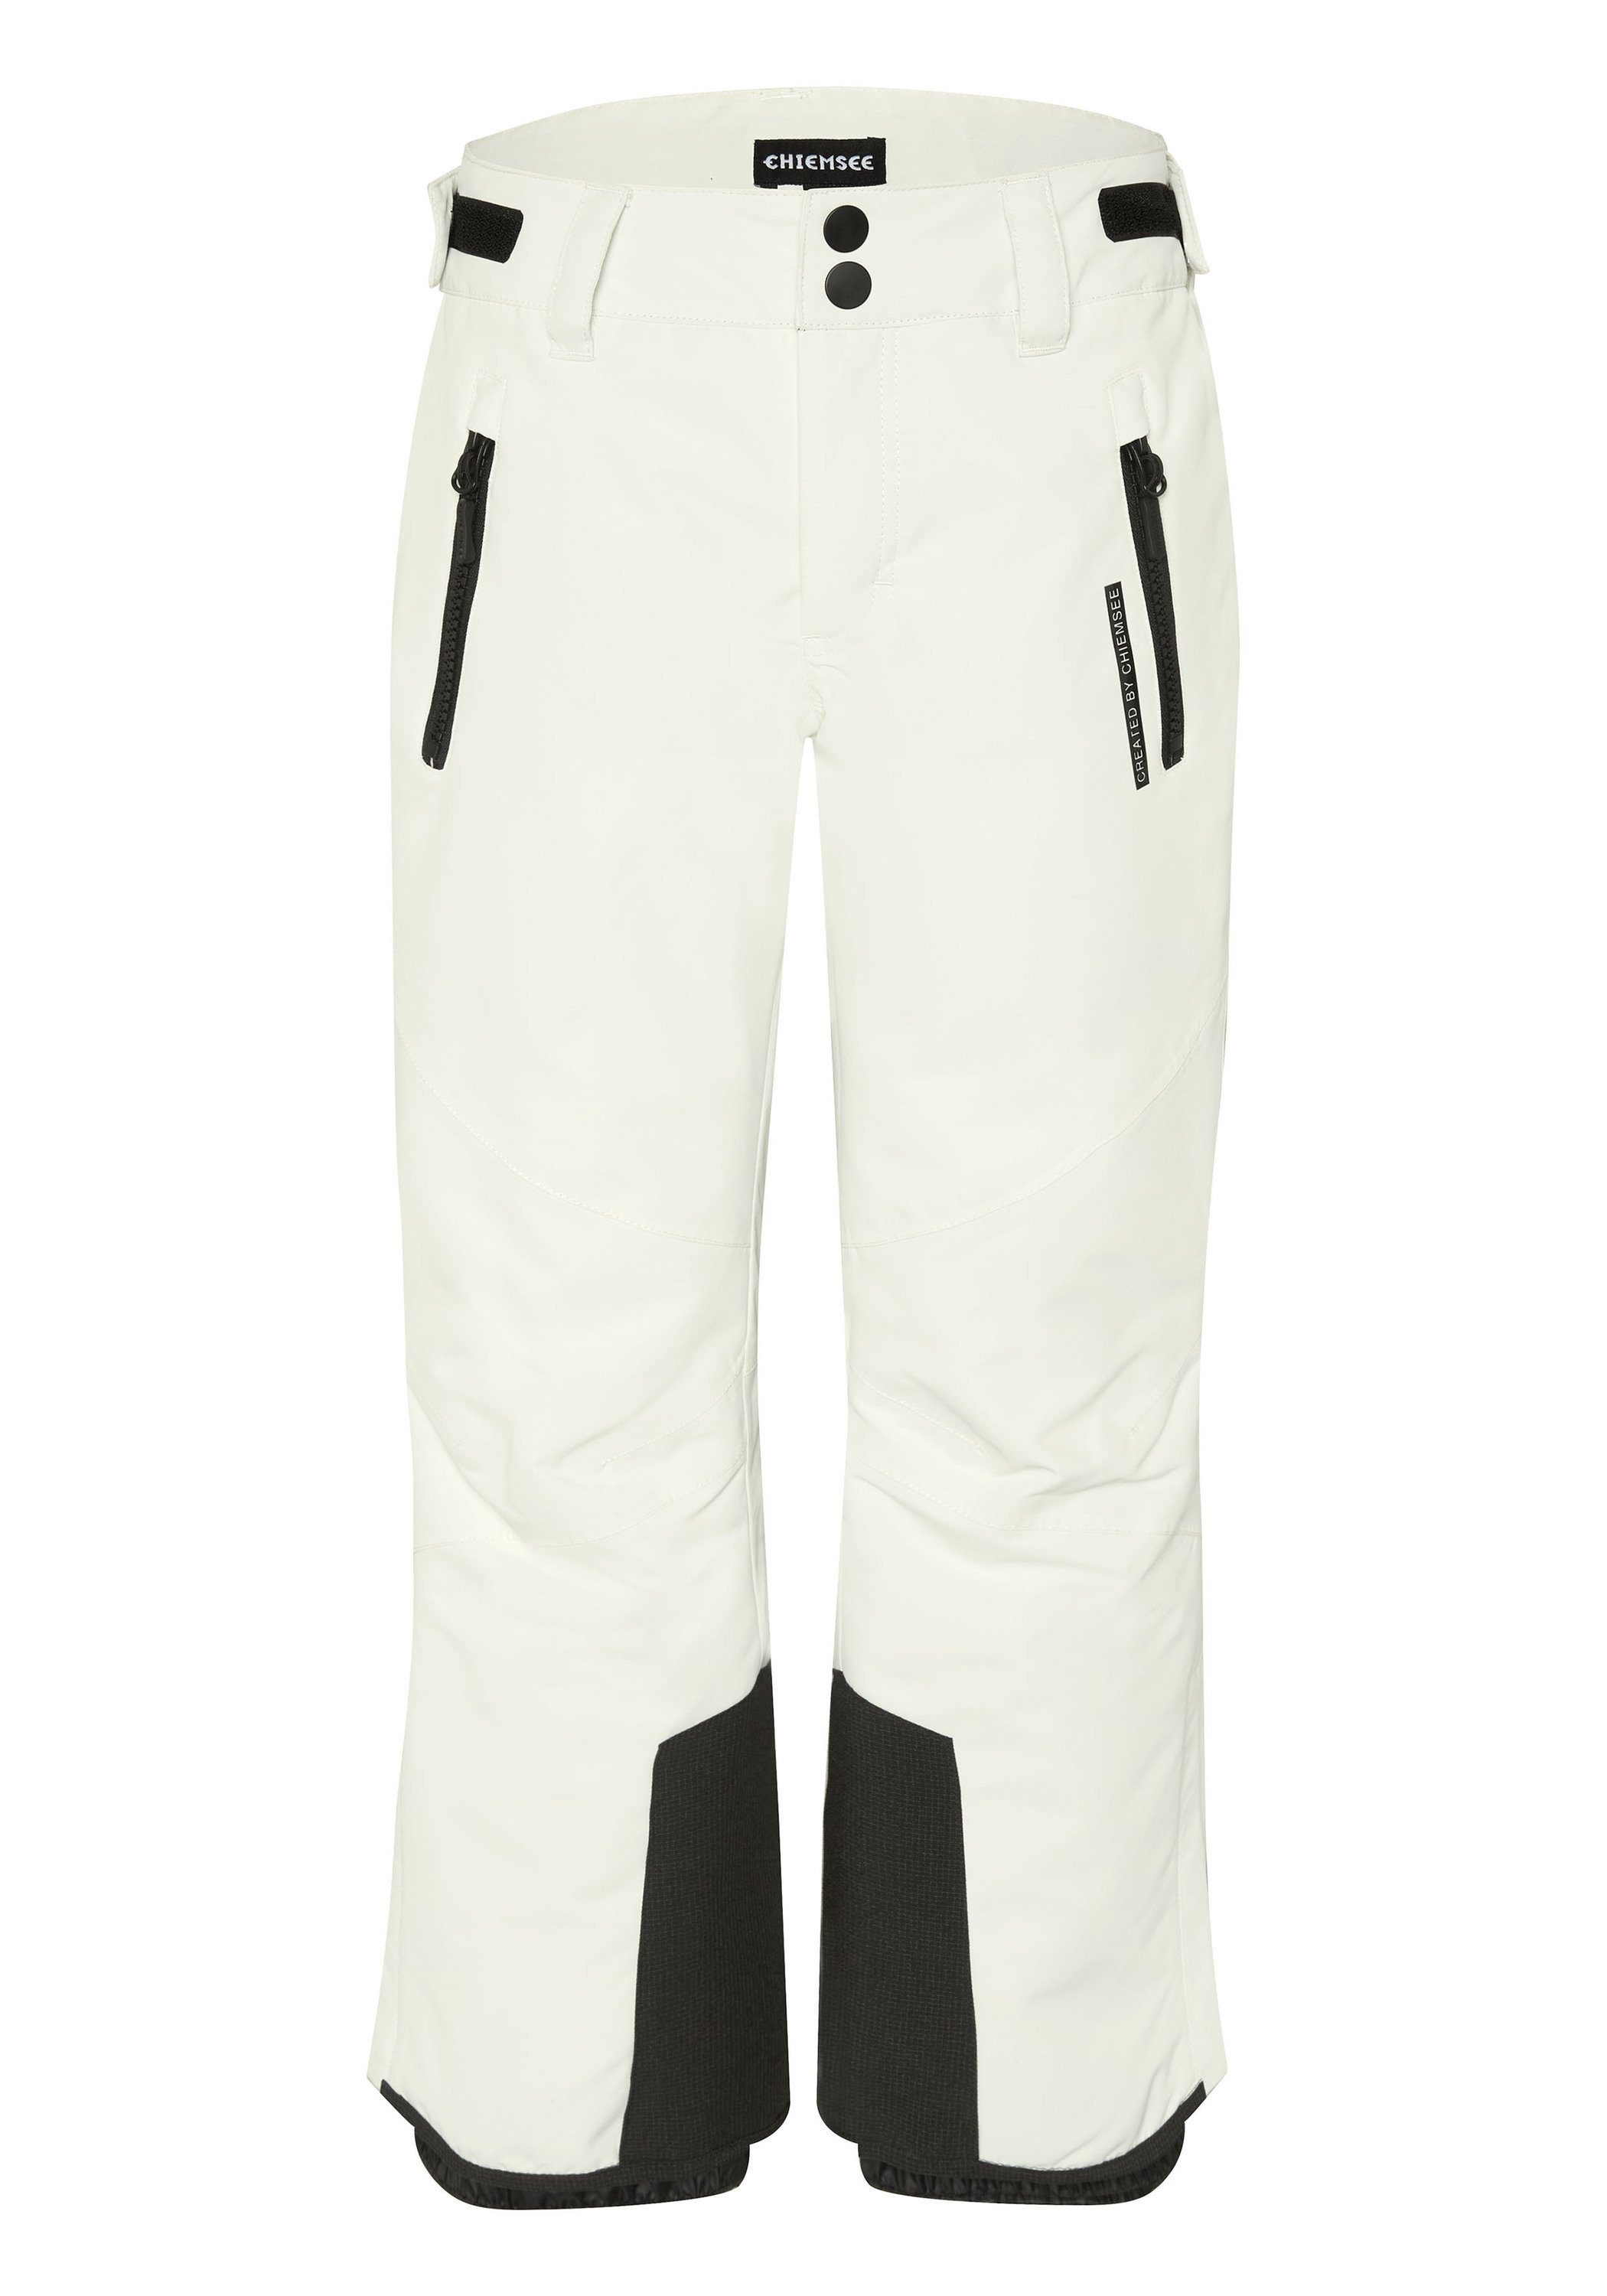 Chiemsee Sporthose Skihose mit CHIEMSEE Print am Bein 1 11-4202 Star White